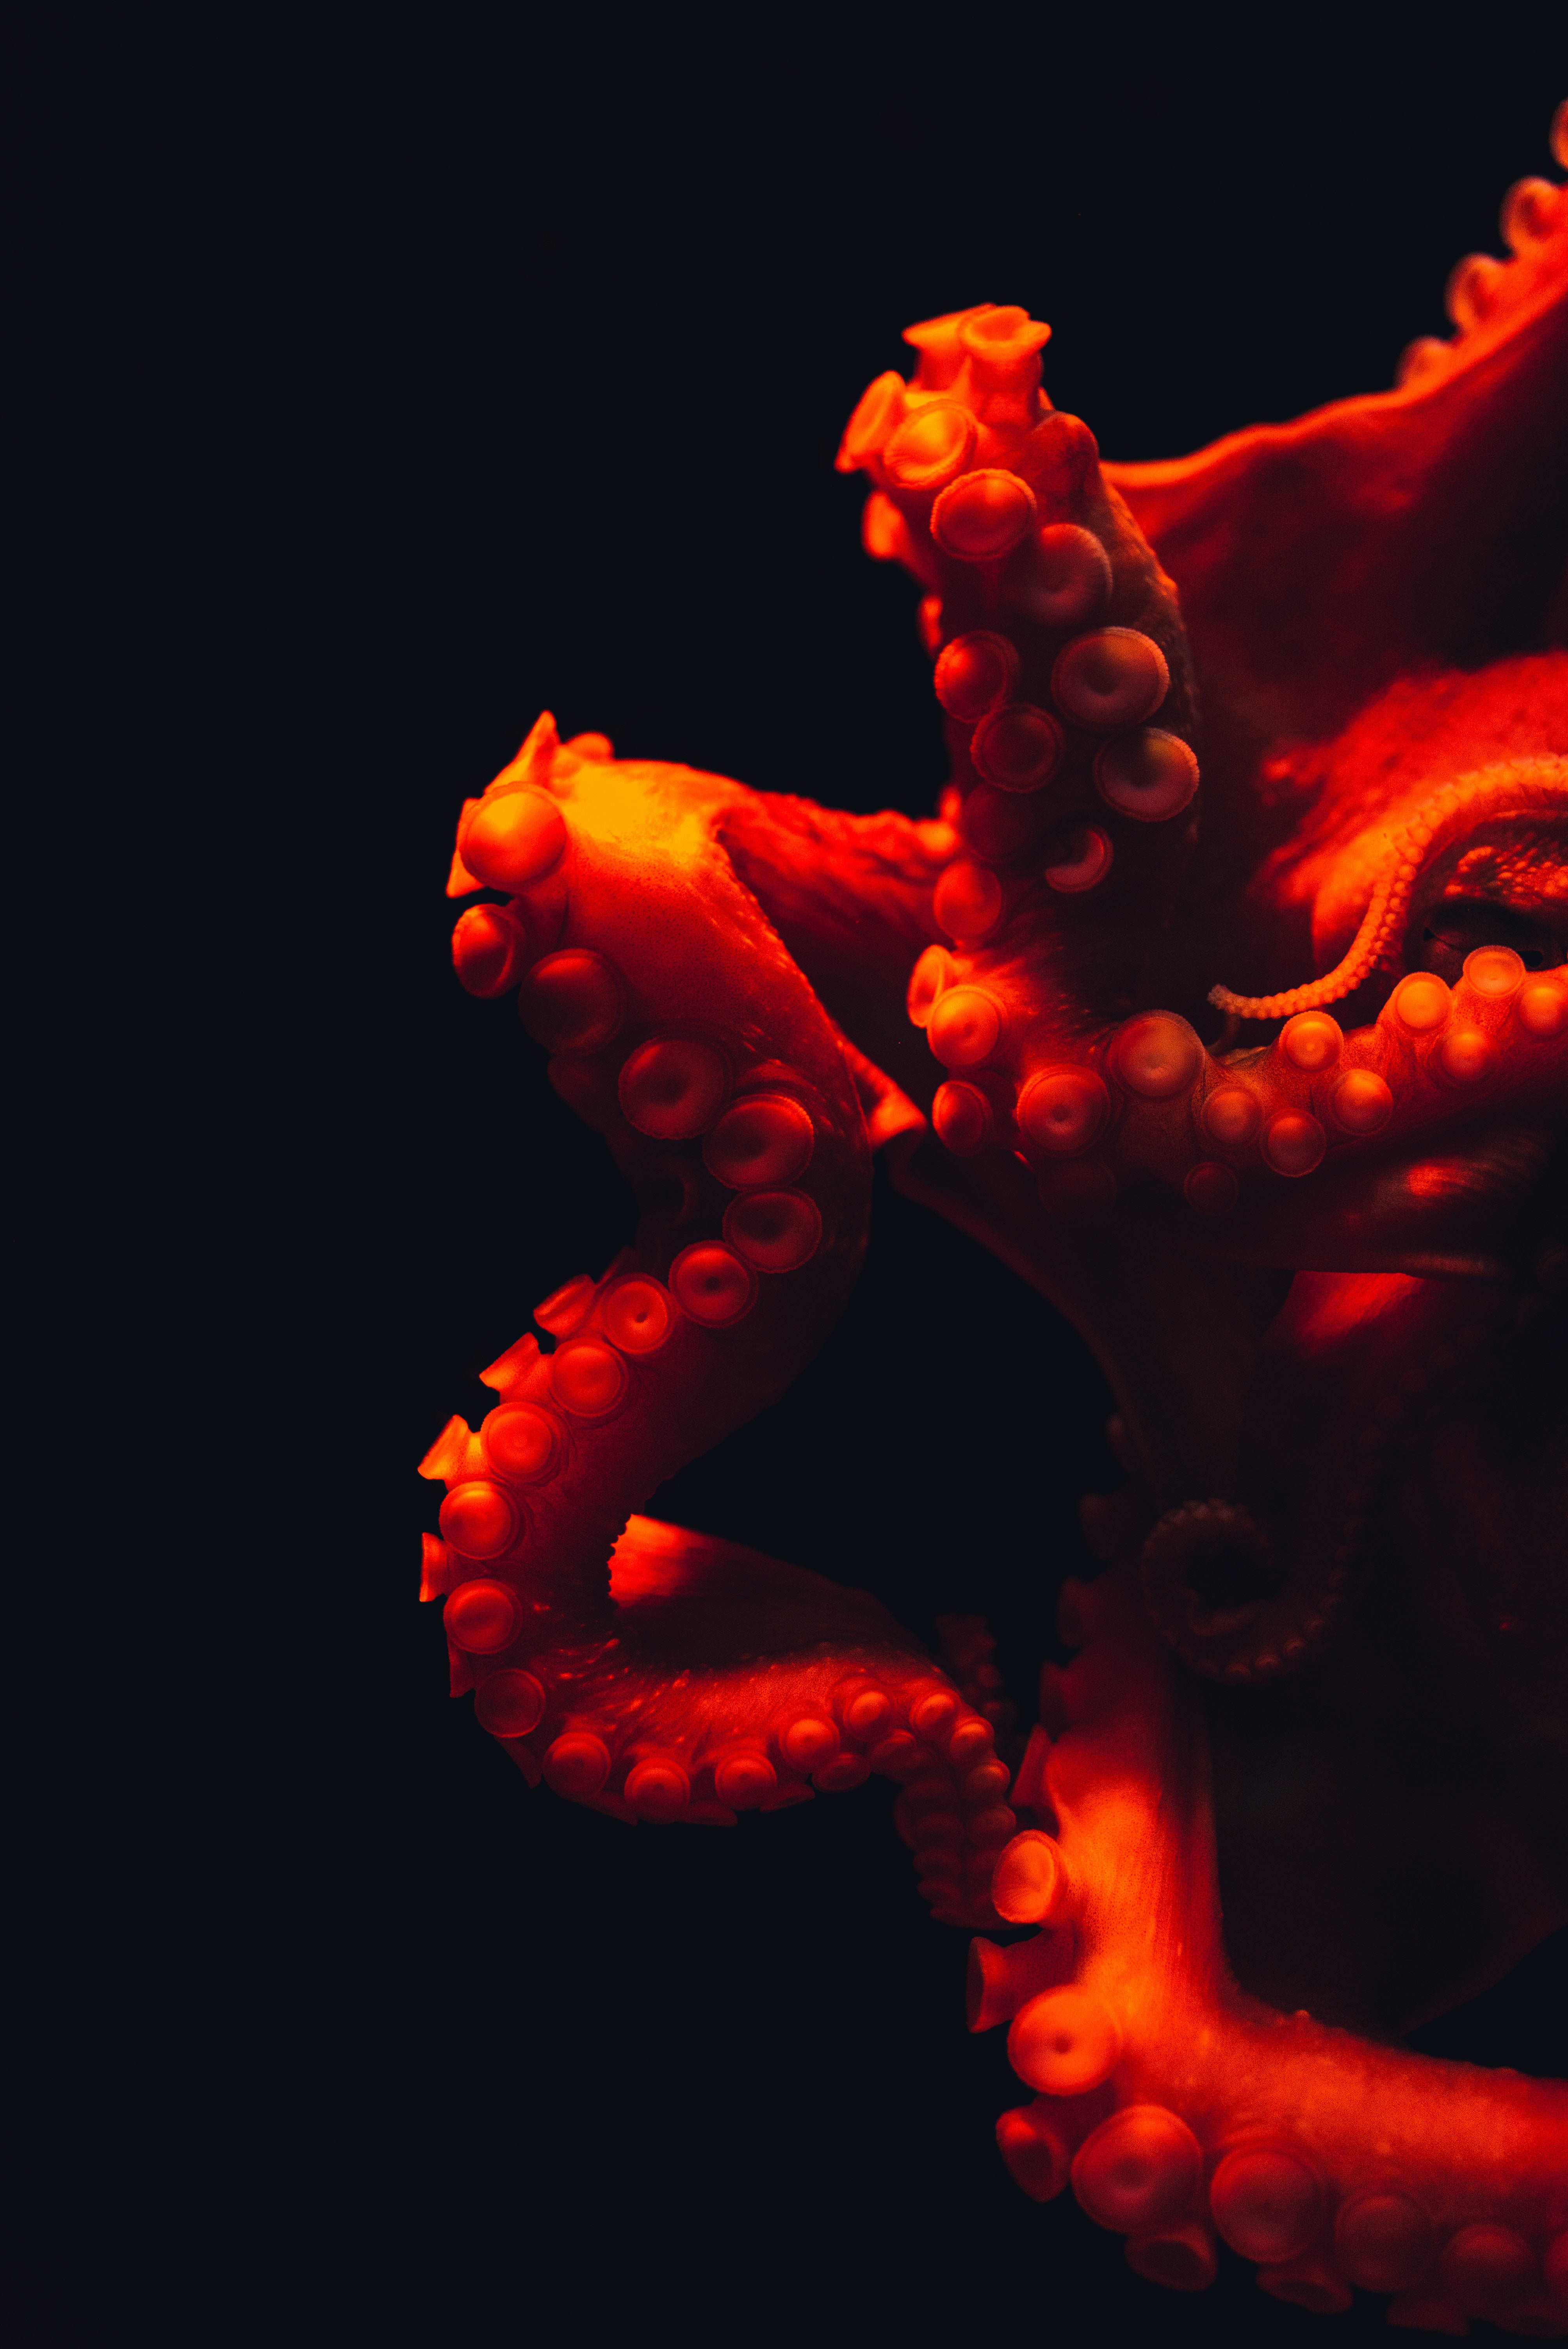 Underwater Red Octopus Background